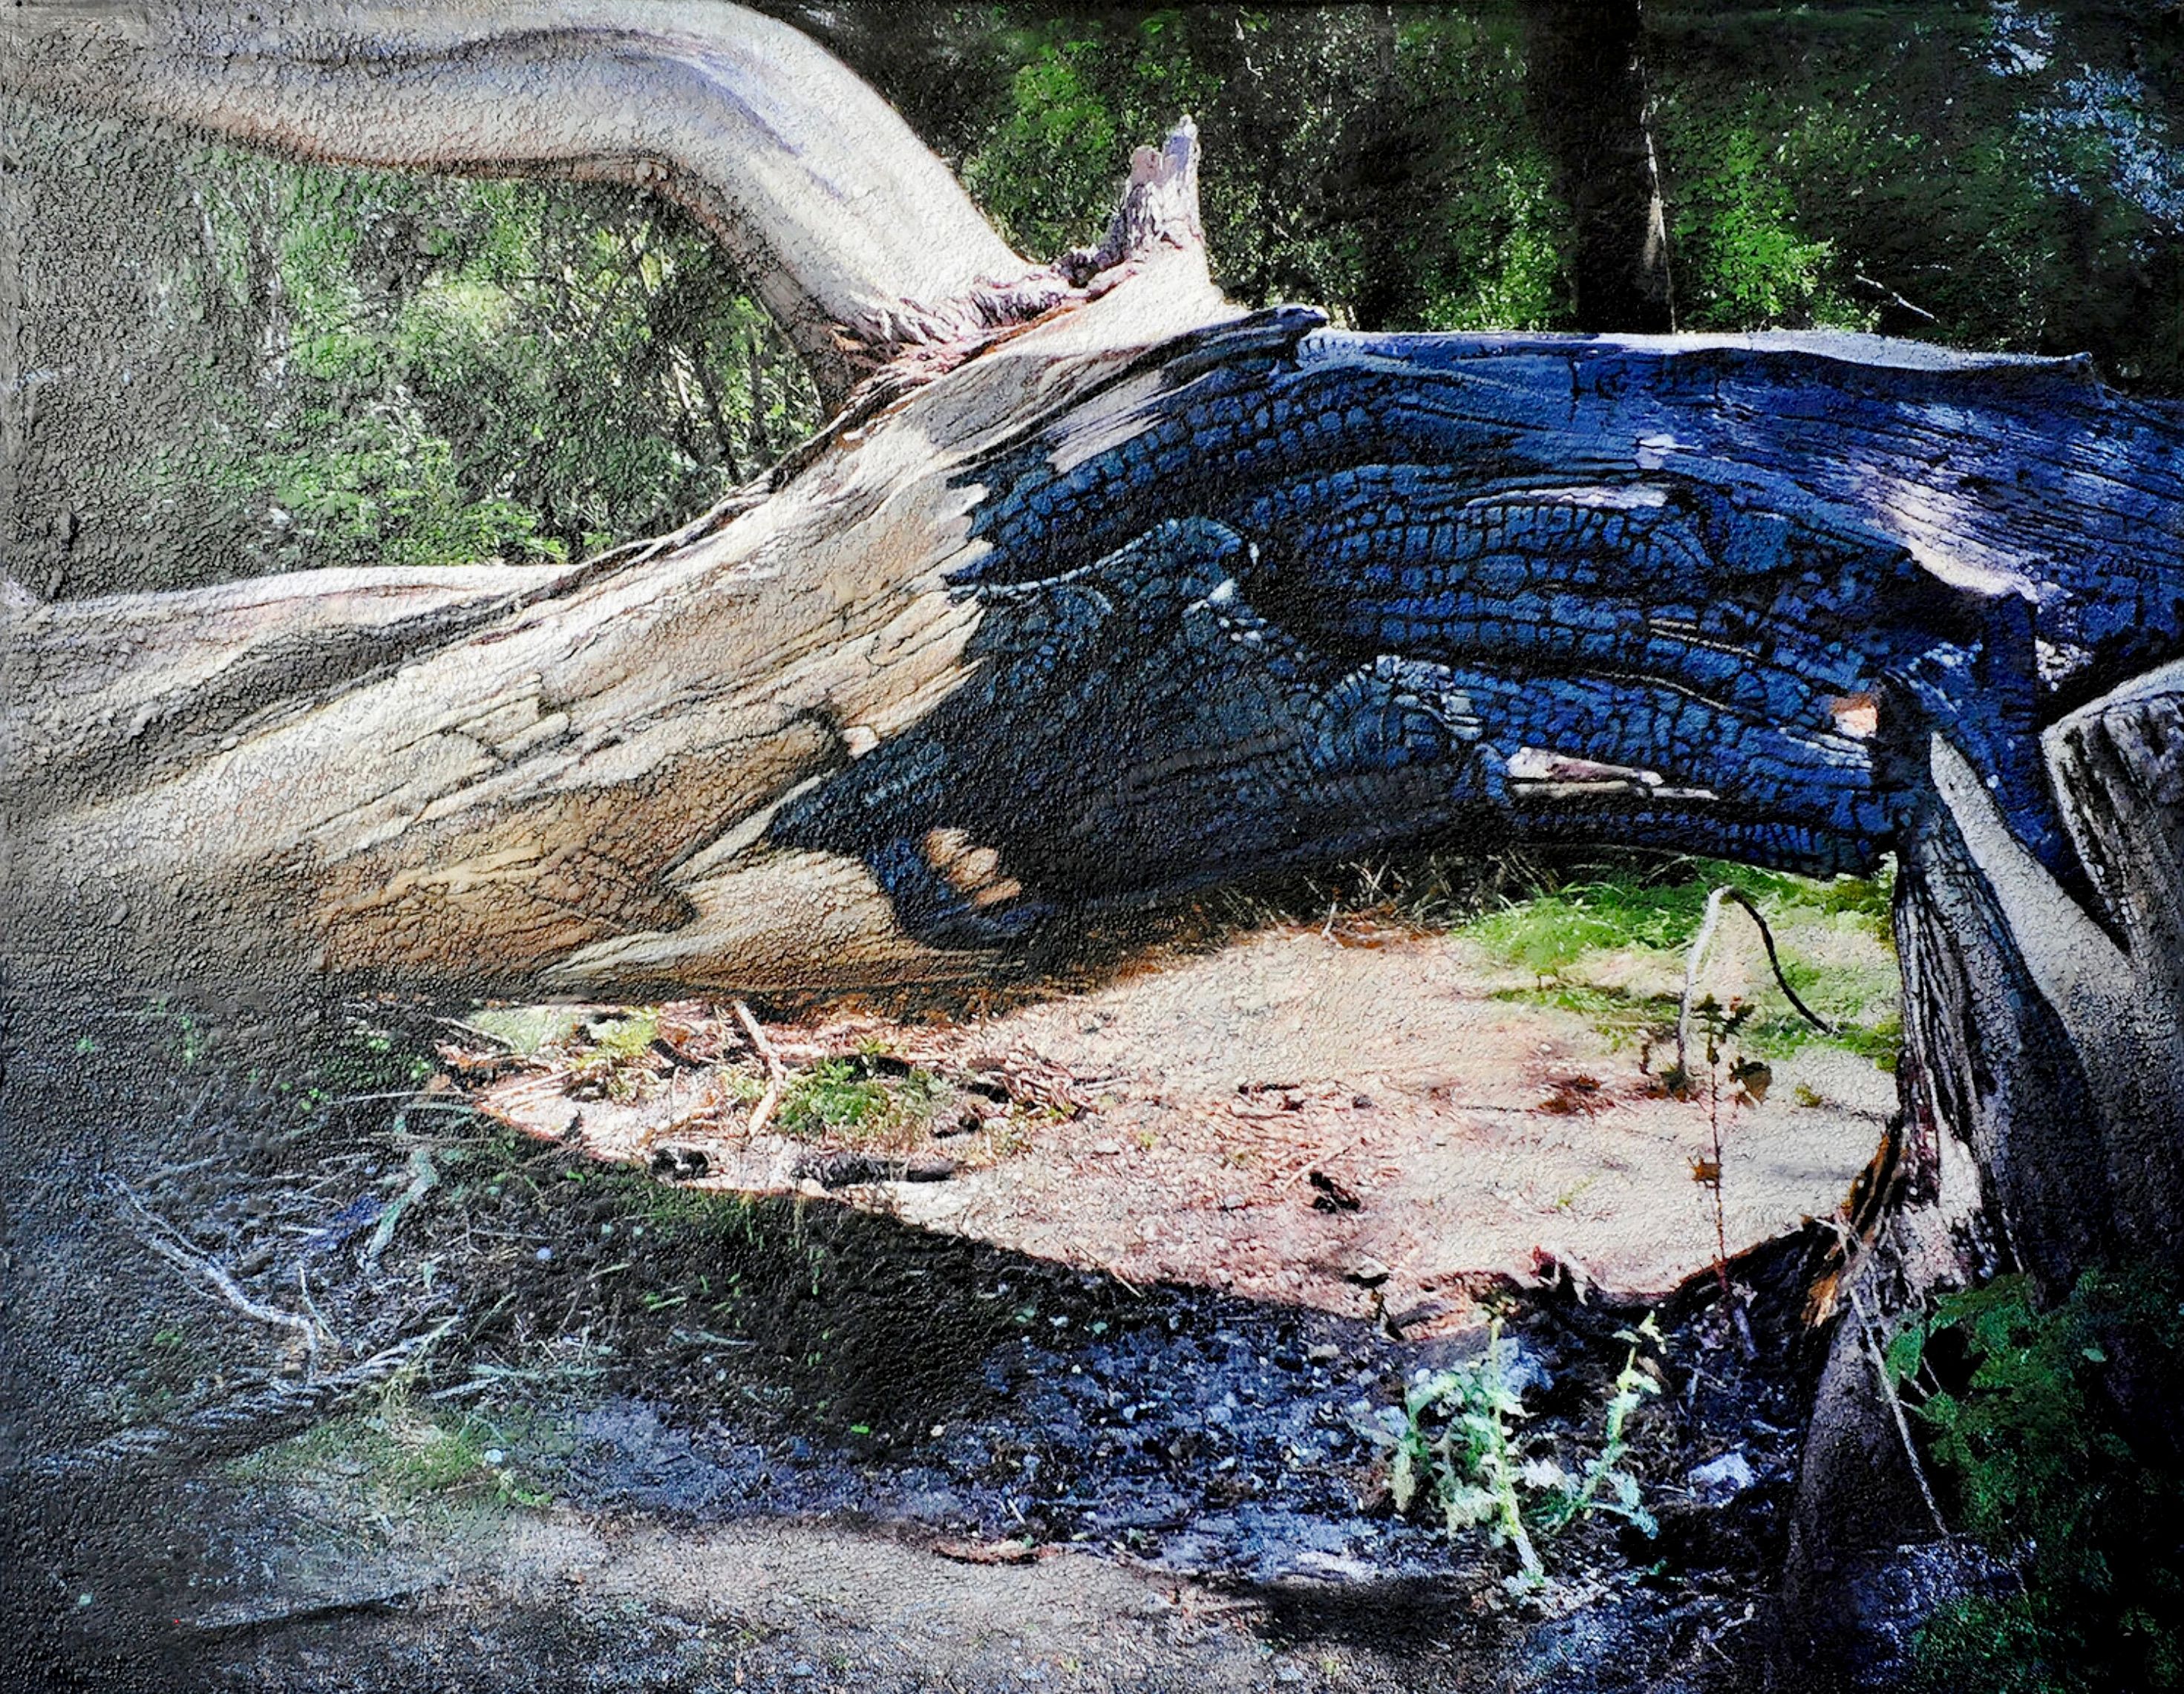 L'opera di Karin Vermeer "Charred tree Brienenoord island" è una combinazione ed elaborazione digitale di fotografie, dipinti e collage. Il dipinto è un'opera d'arte unica, molto strutturata e dettagliata. Ci si può quasi immergere in questo paesaggio forestale.